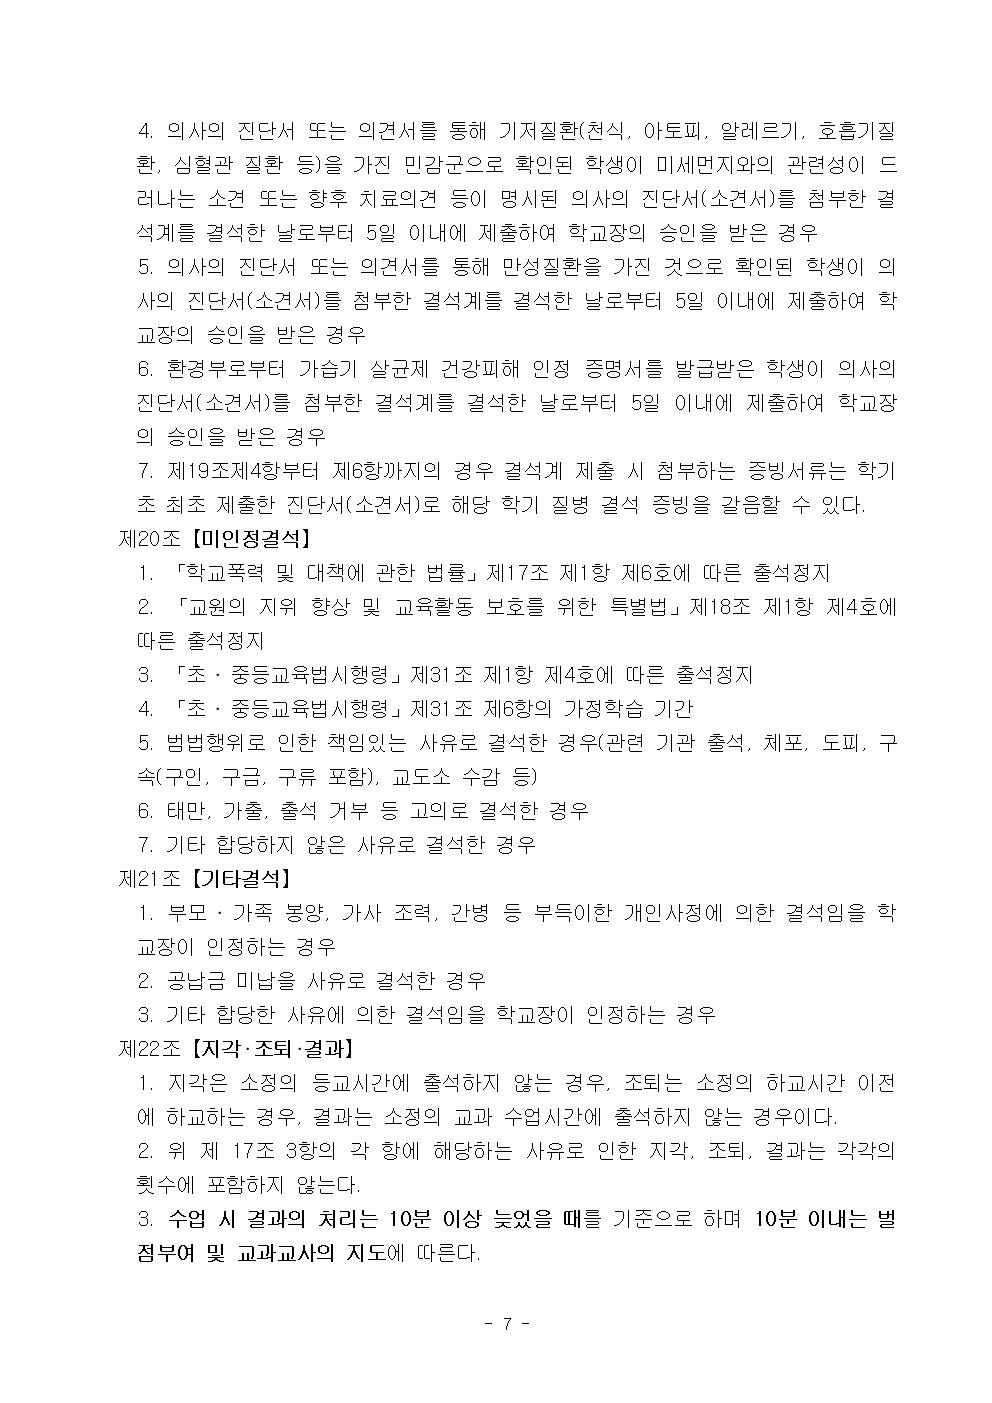 2022학년도 광혜원중학교 학생생활규정008